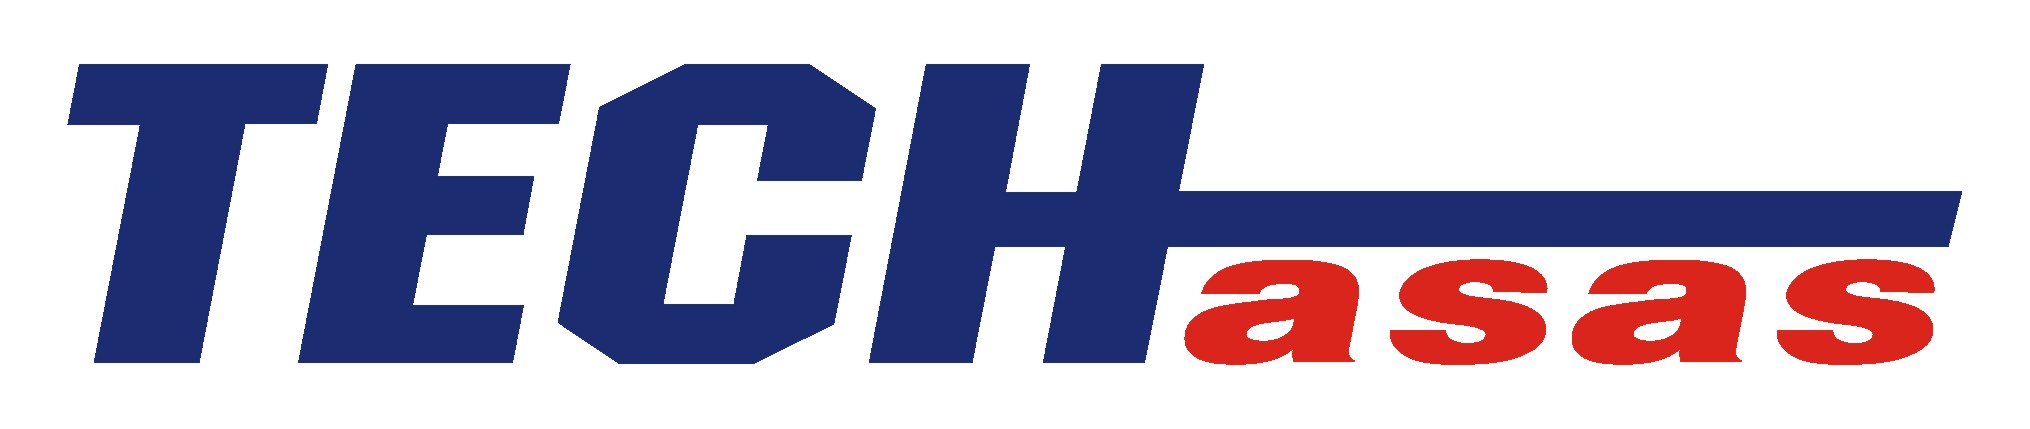 Techasas-logo